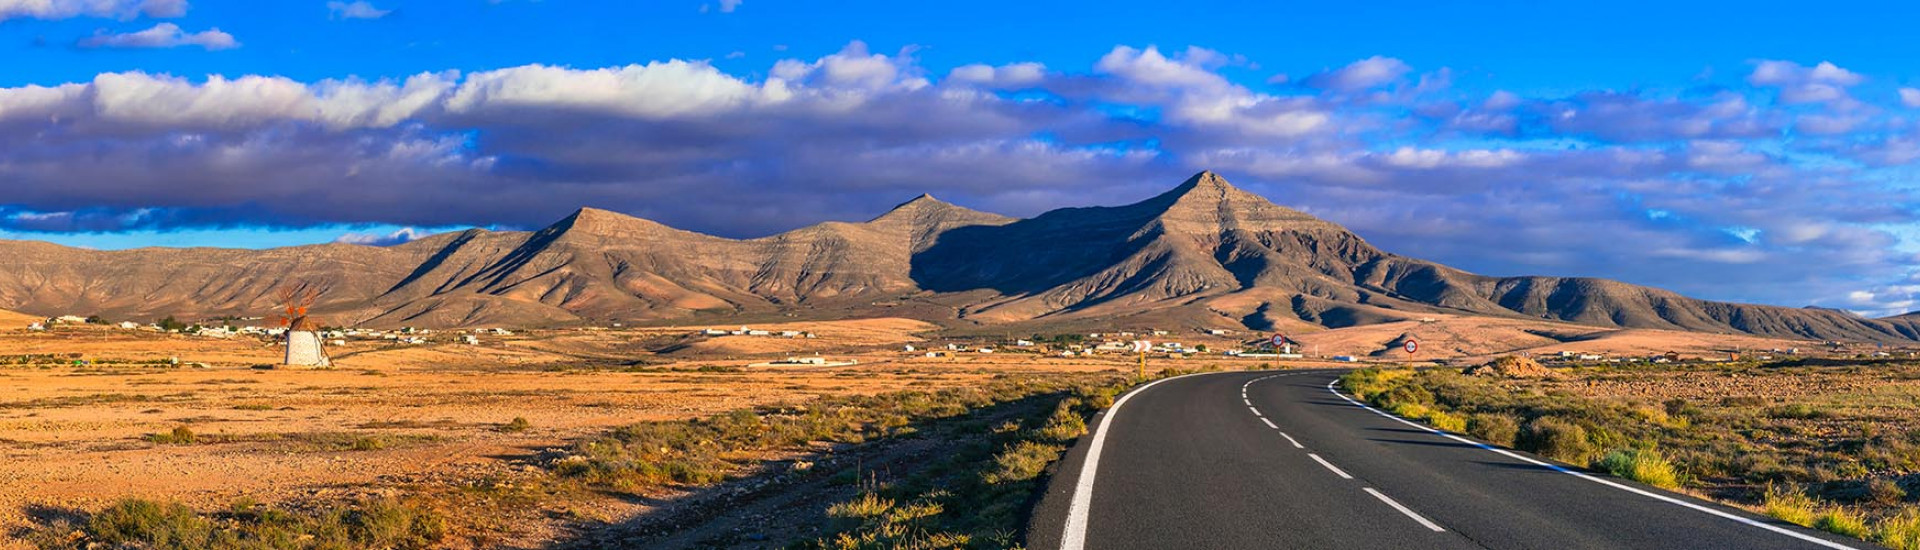 Betancuria en Fuerteventura, entre los "pueblos más bonitos de España"